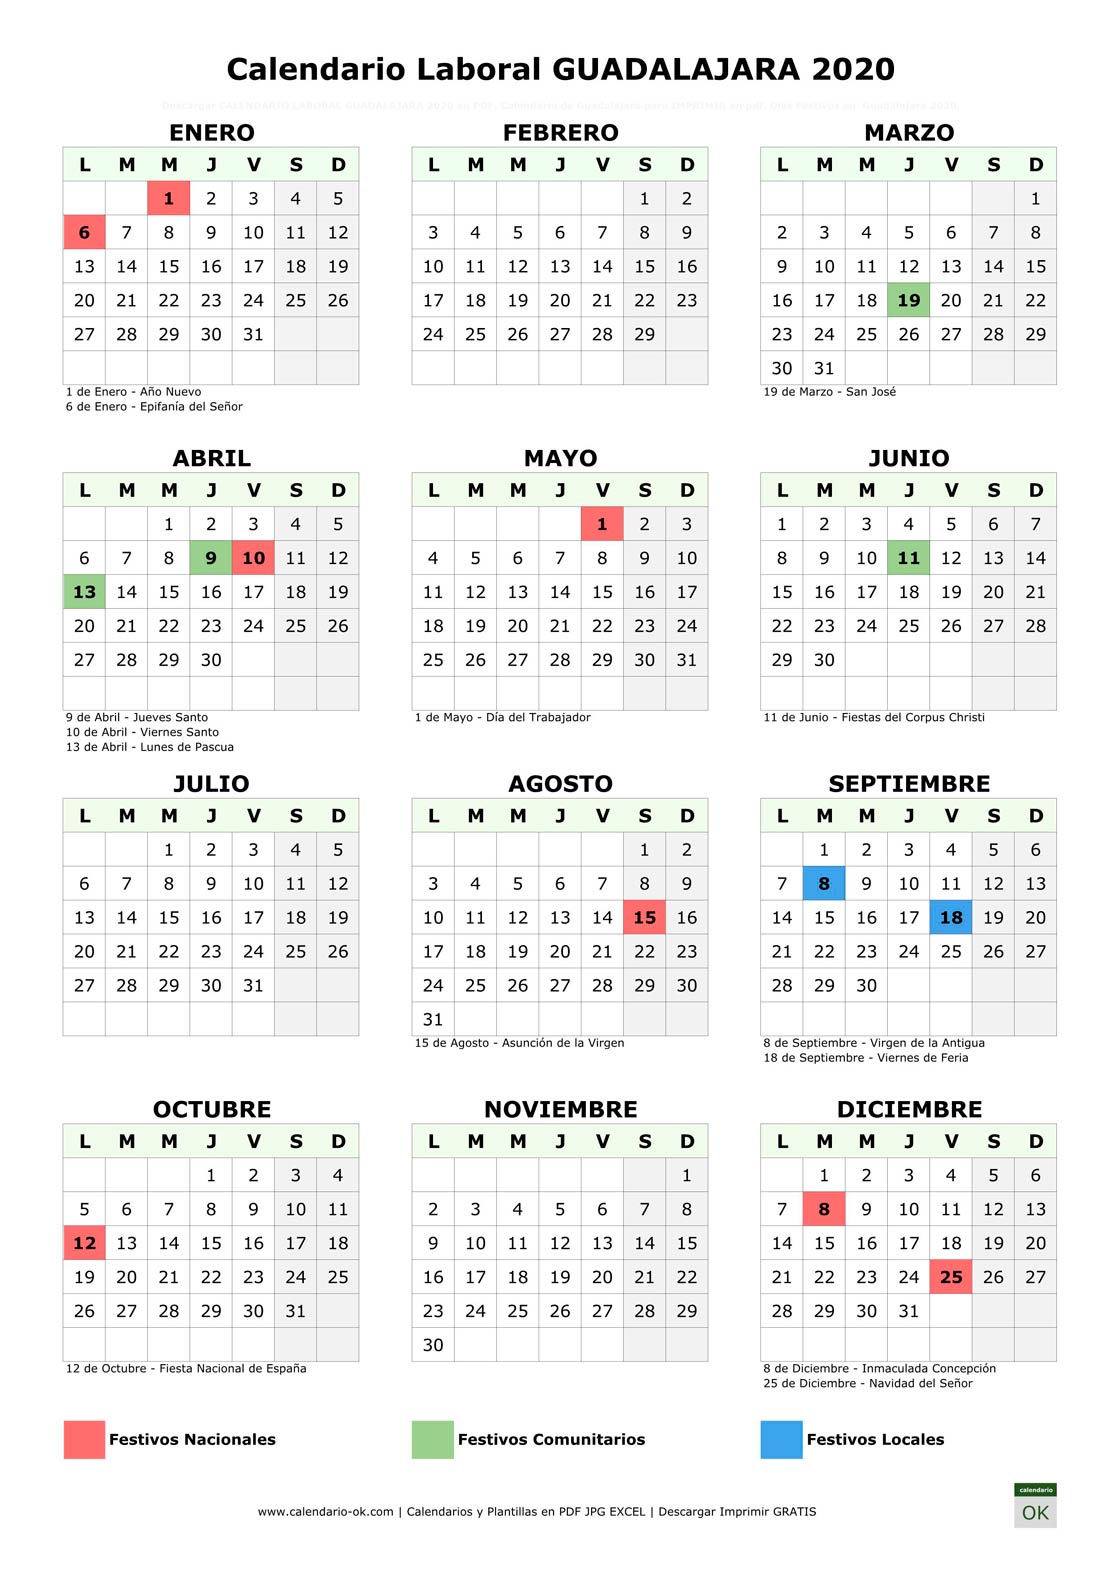 Calendario Laboral GUADALAJARA 2020